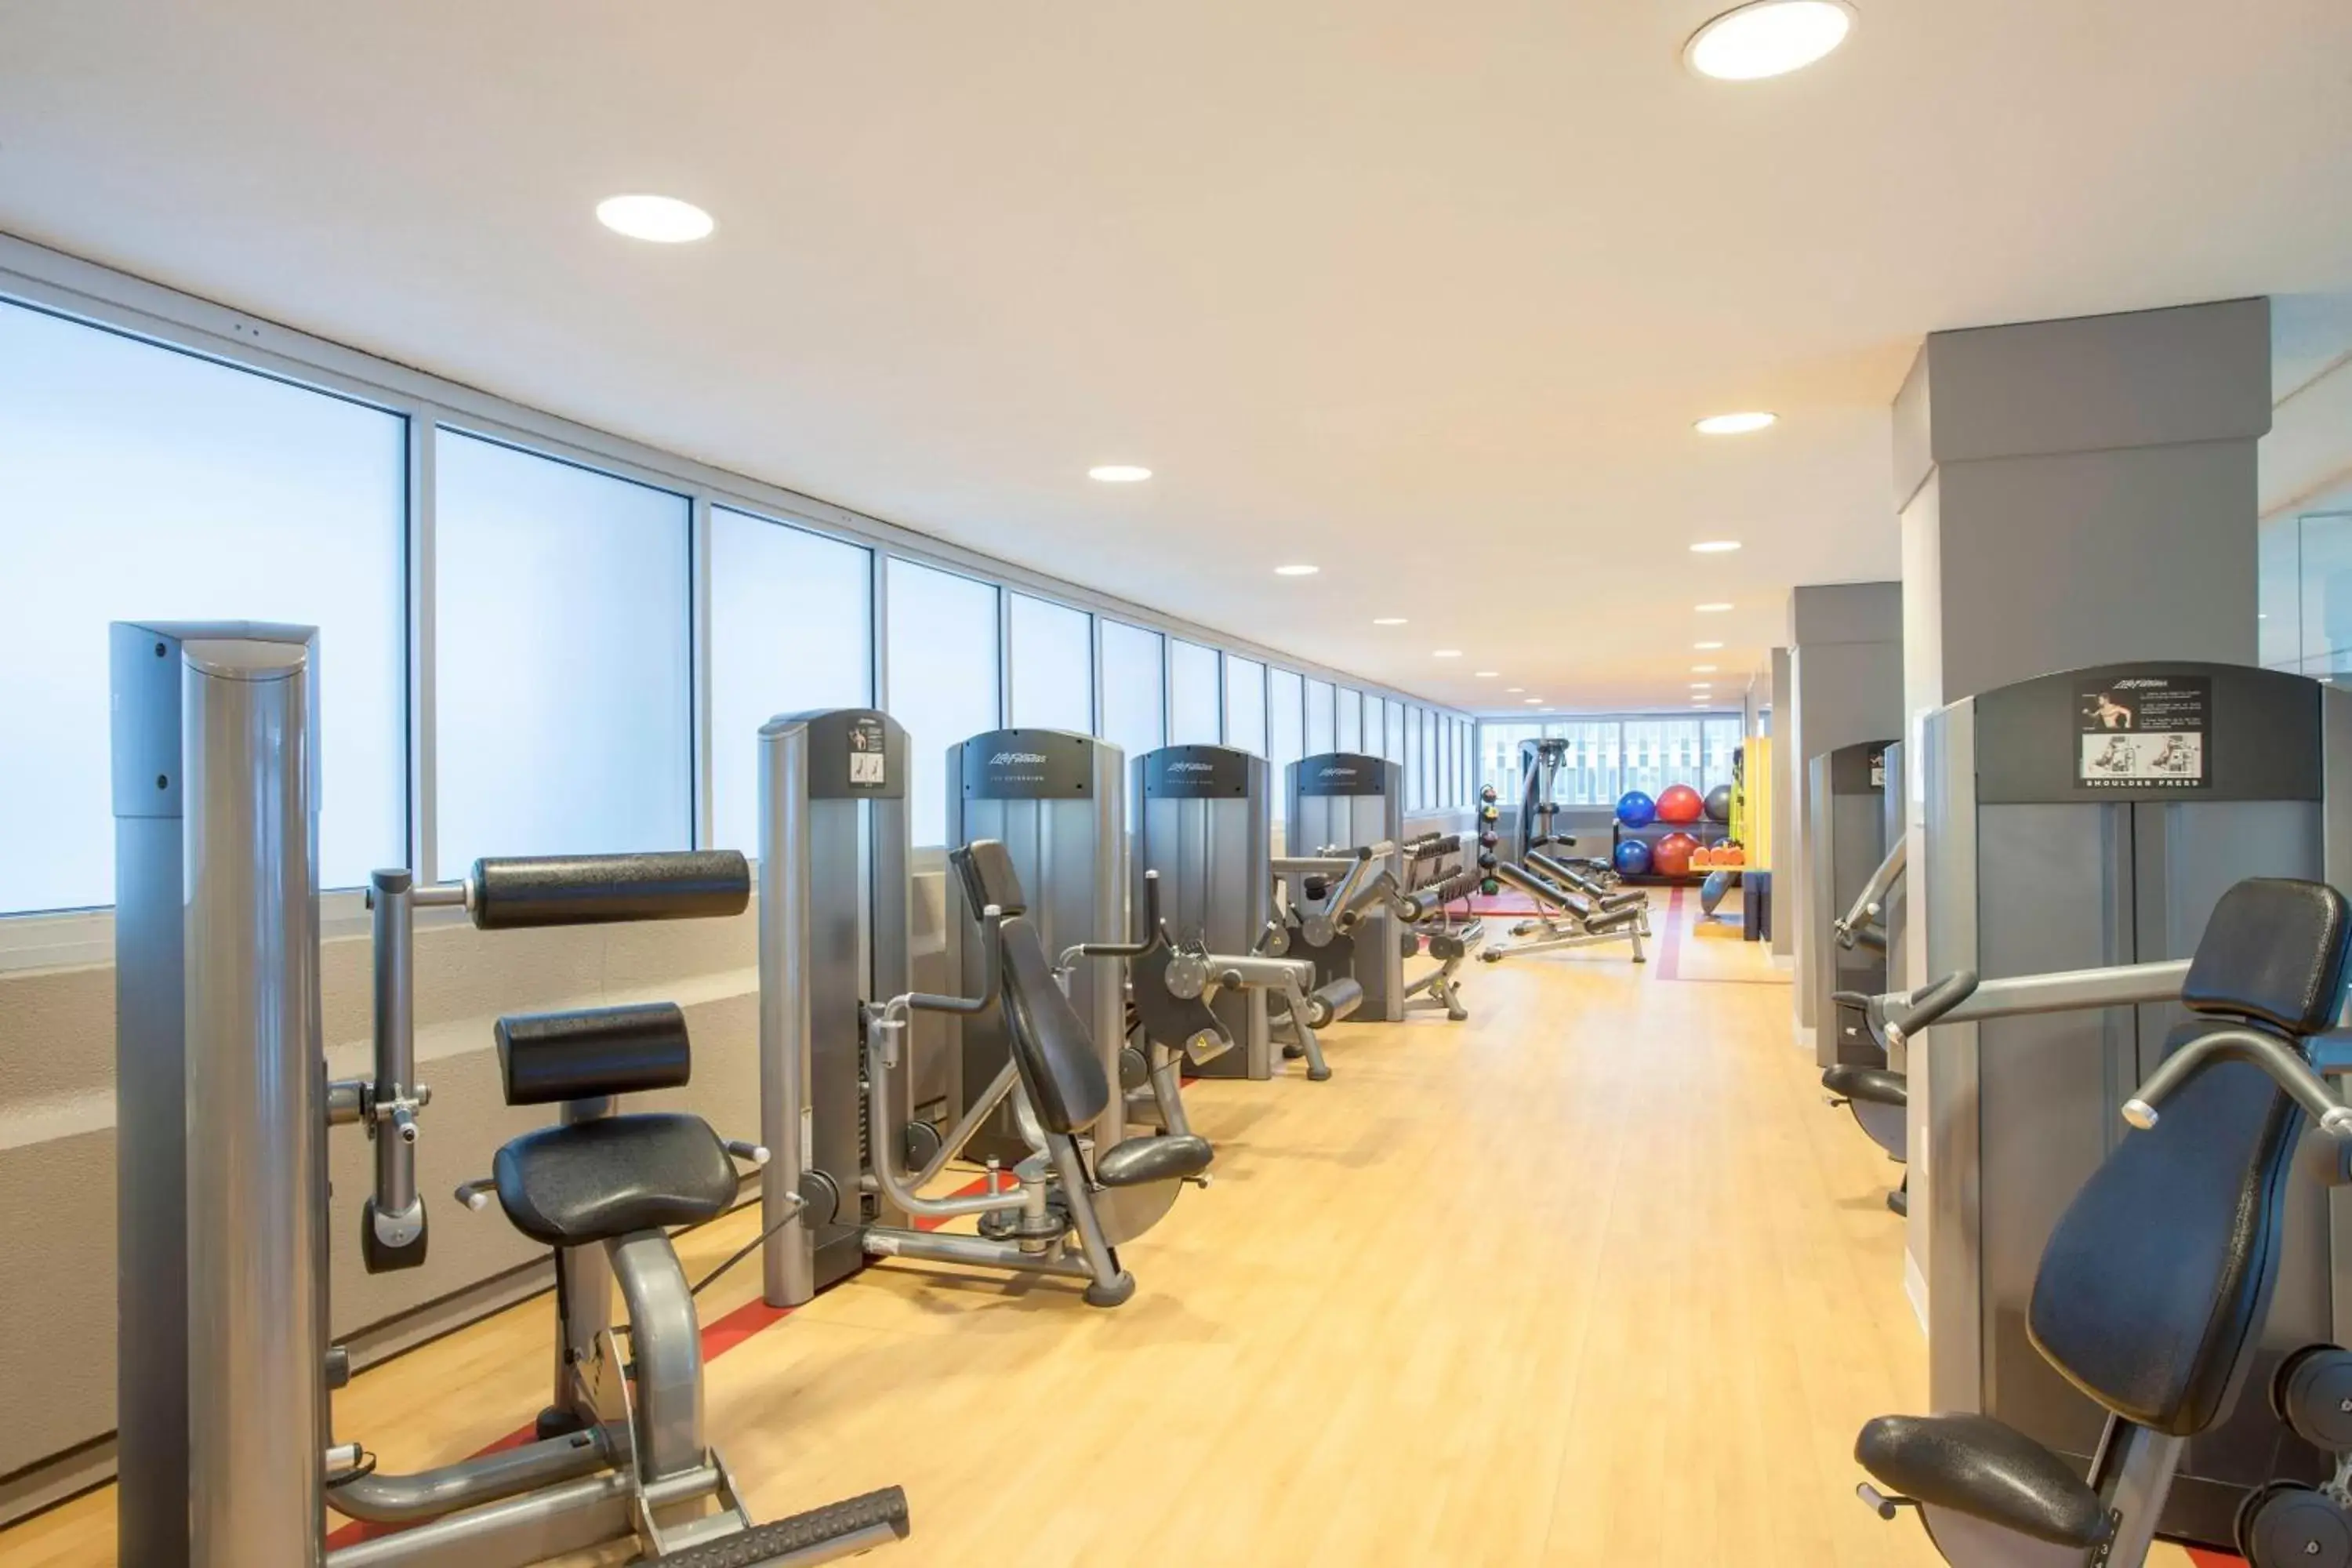 Fitness centre/facilities, Fitness Center/Facilities in Sheraton Boston Hotel